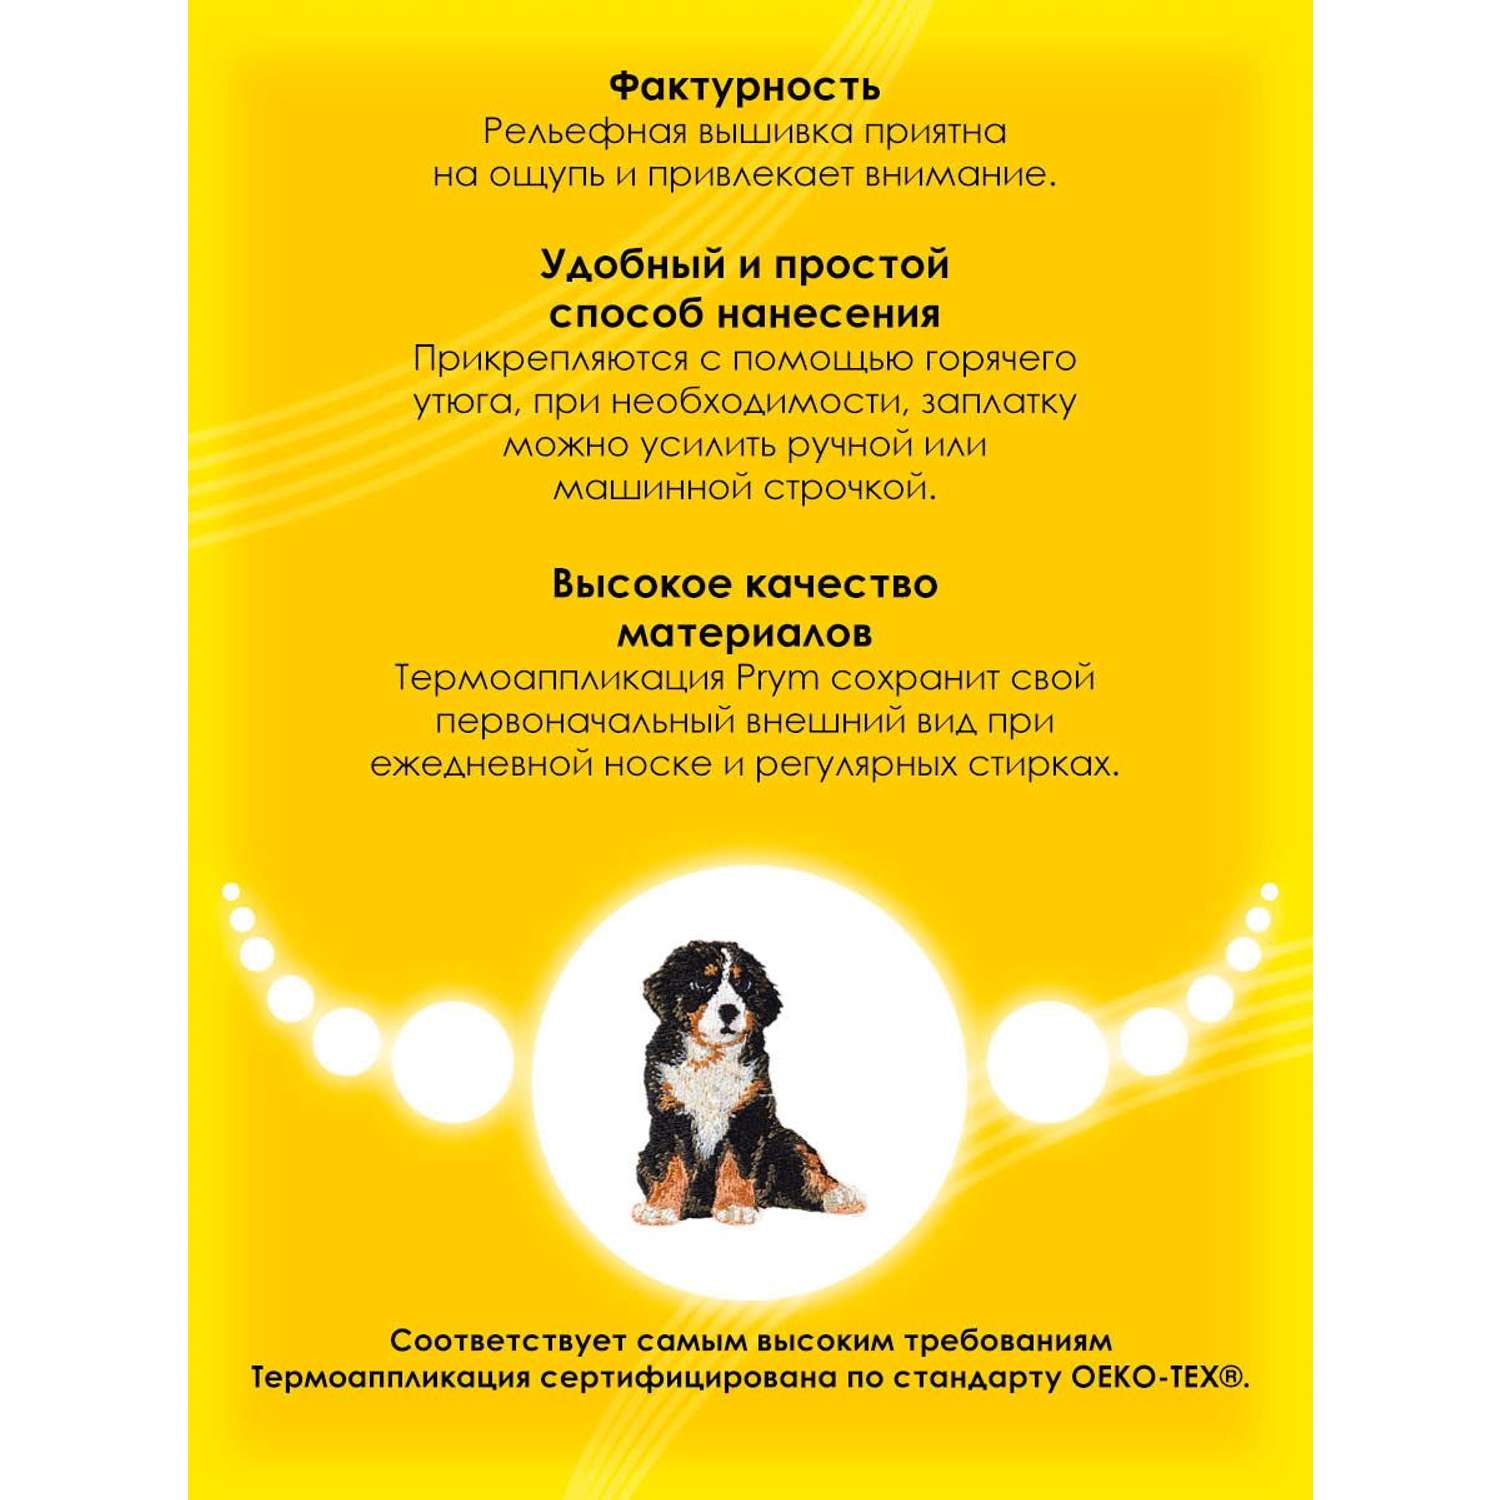 Термоаппликация Prym нашивка Альпийская собака 5.5х4.4 см для ремонта и украшения одежды 925578 - фото 3